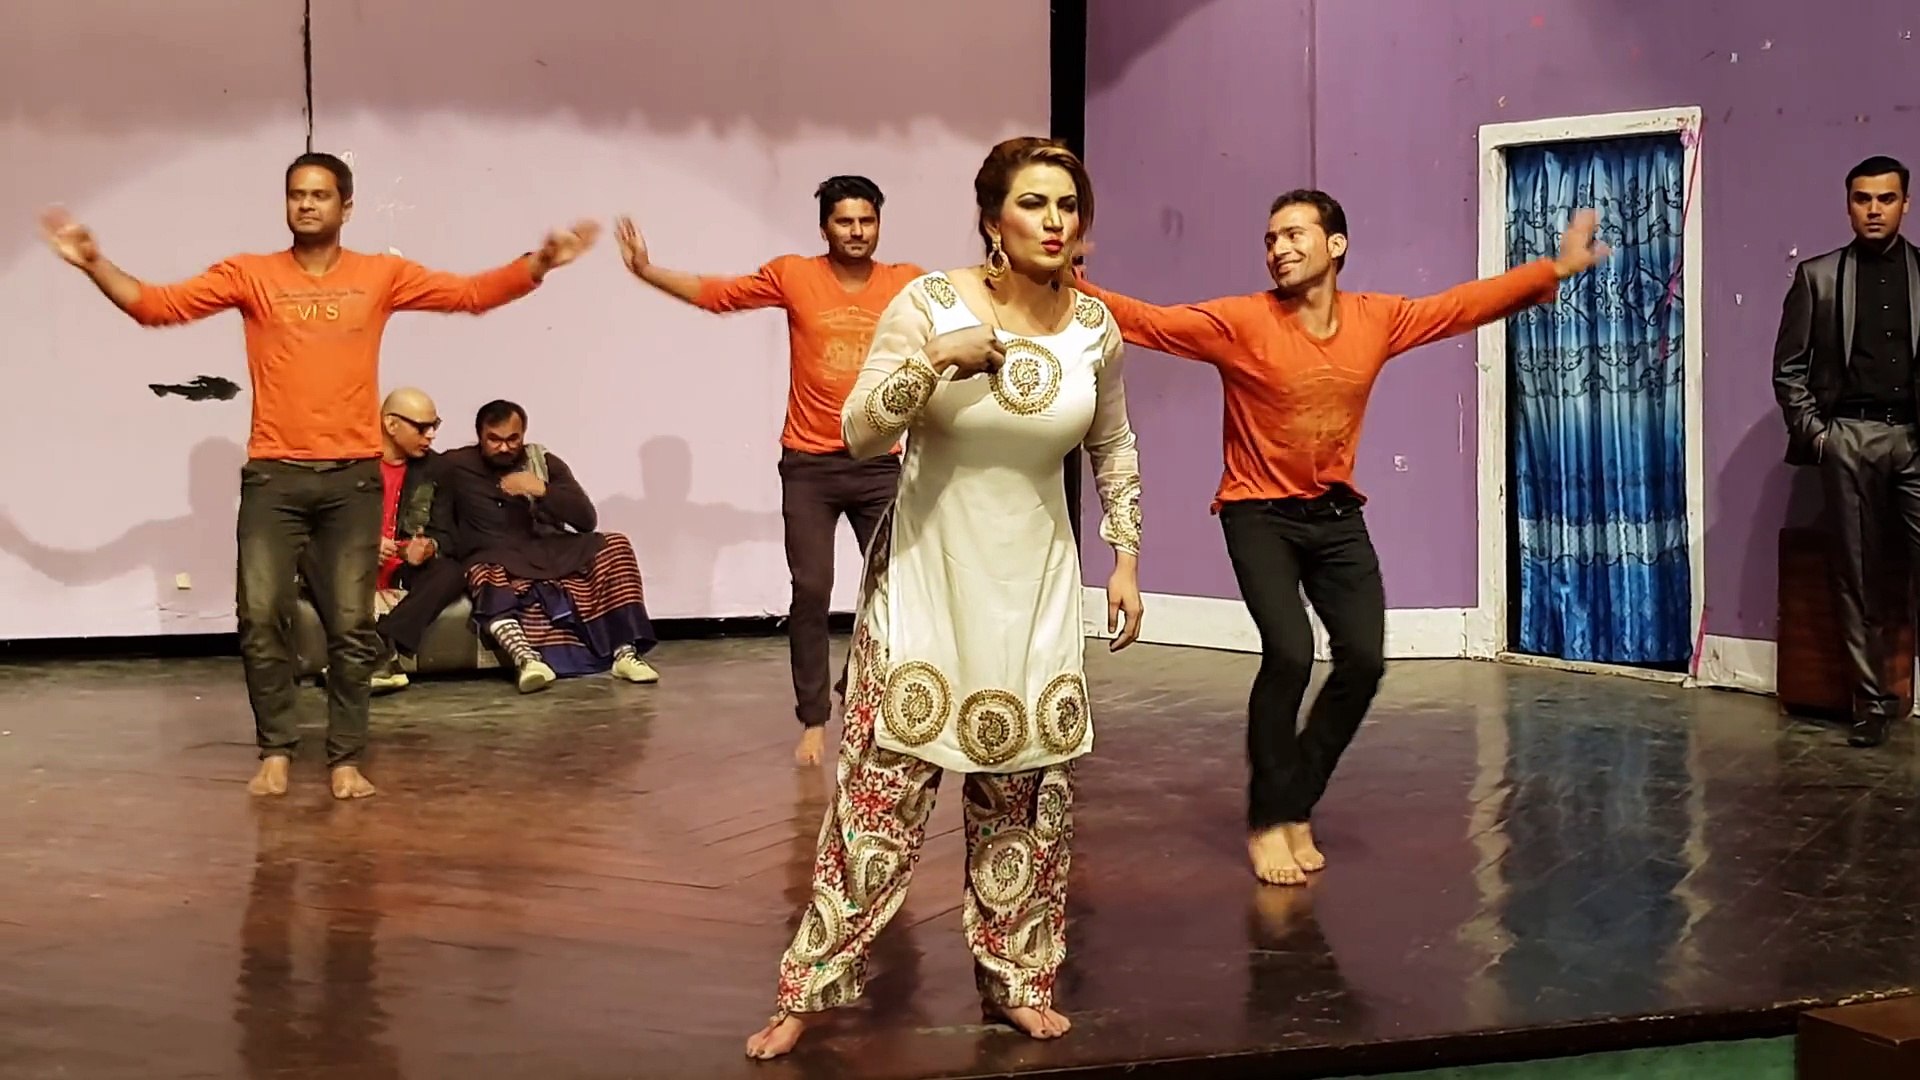 Pakistani Hot Big Boobs Nanga Mujra Dance - Pakistani Sobia Khan Hot Nanga Mujra On Stage Full Hd Video Dialog ...